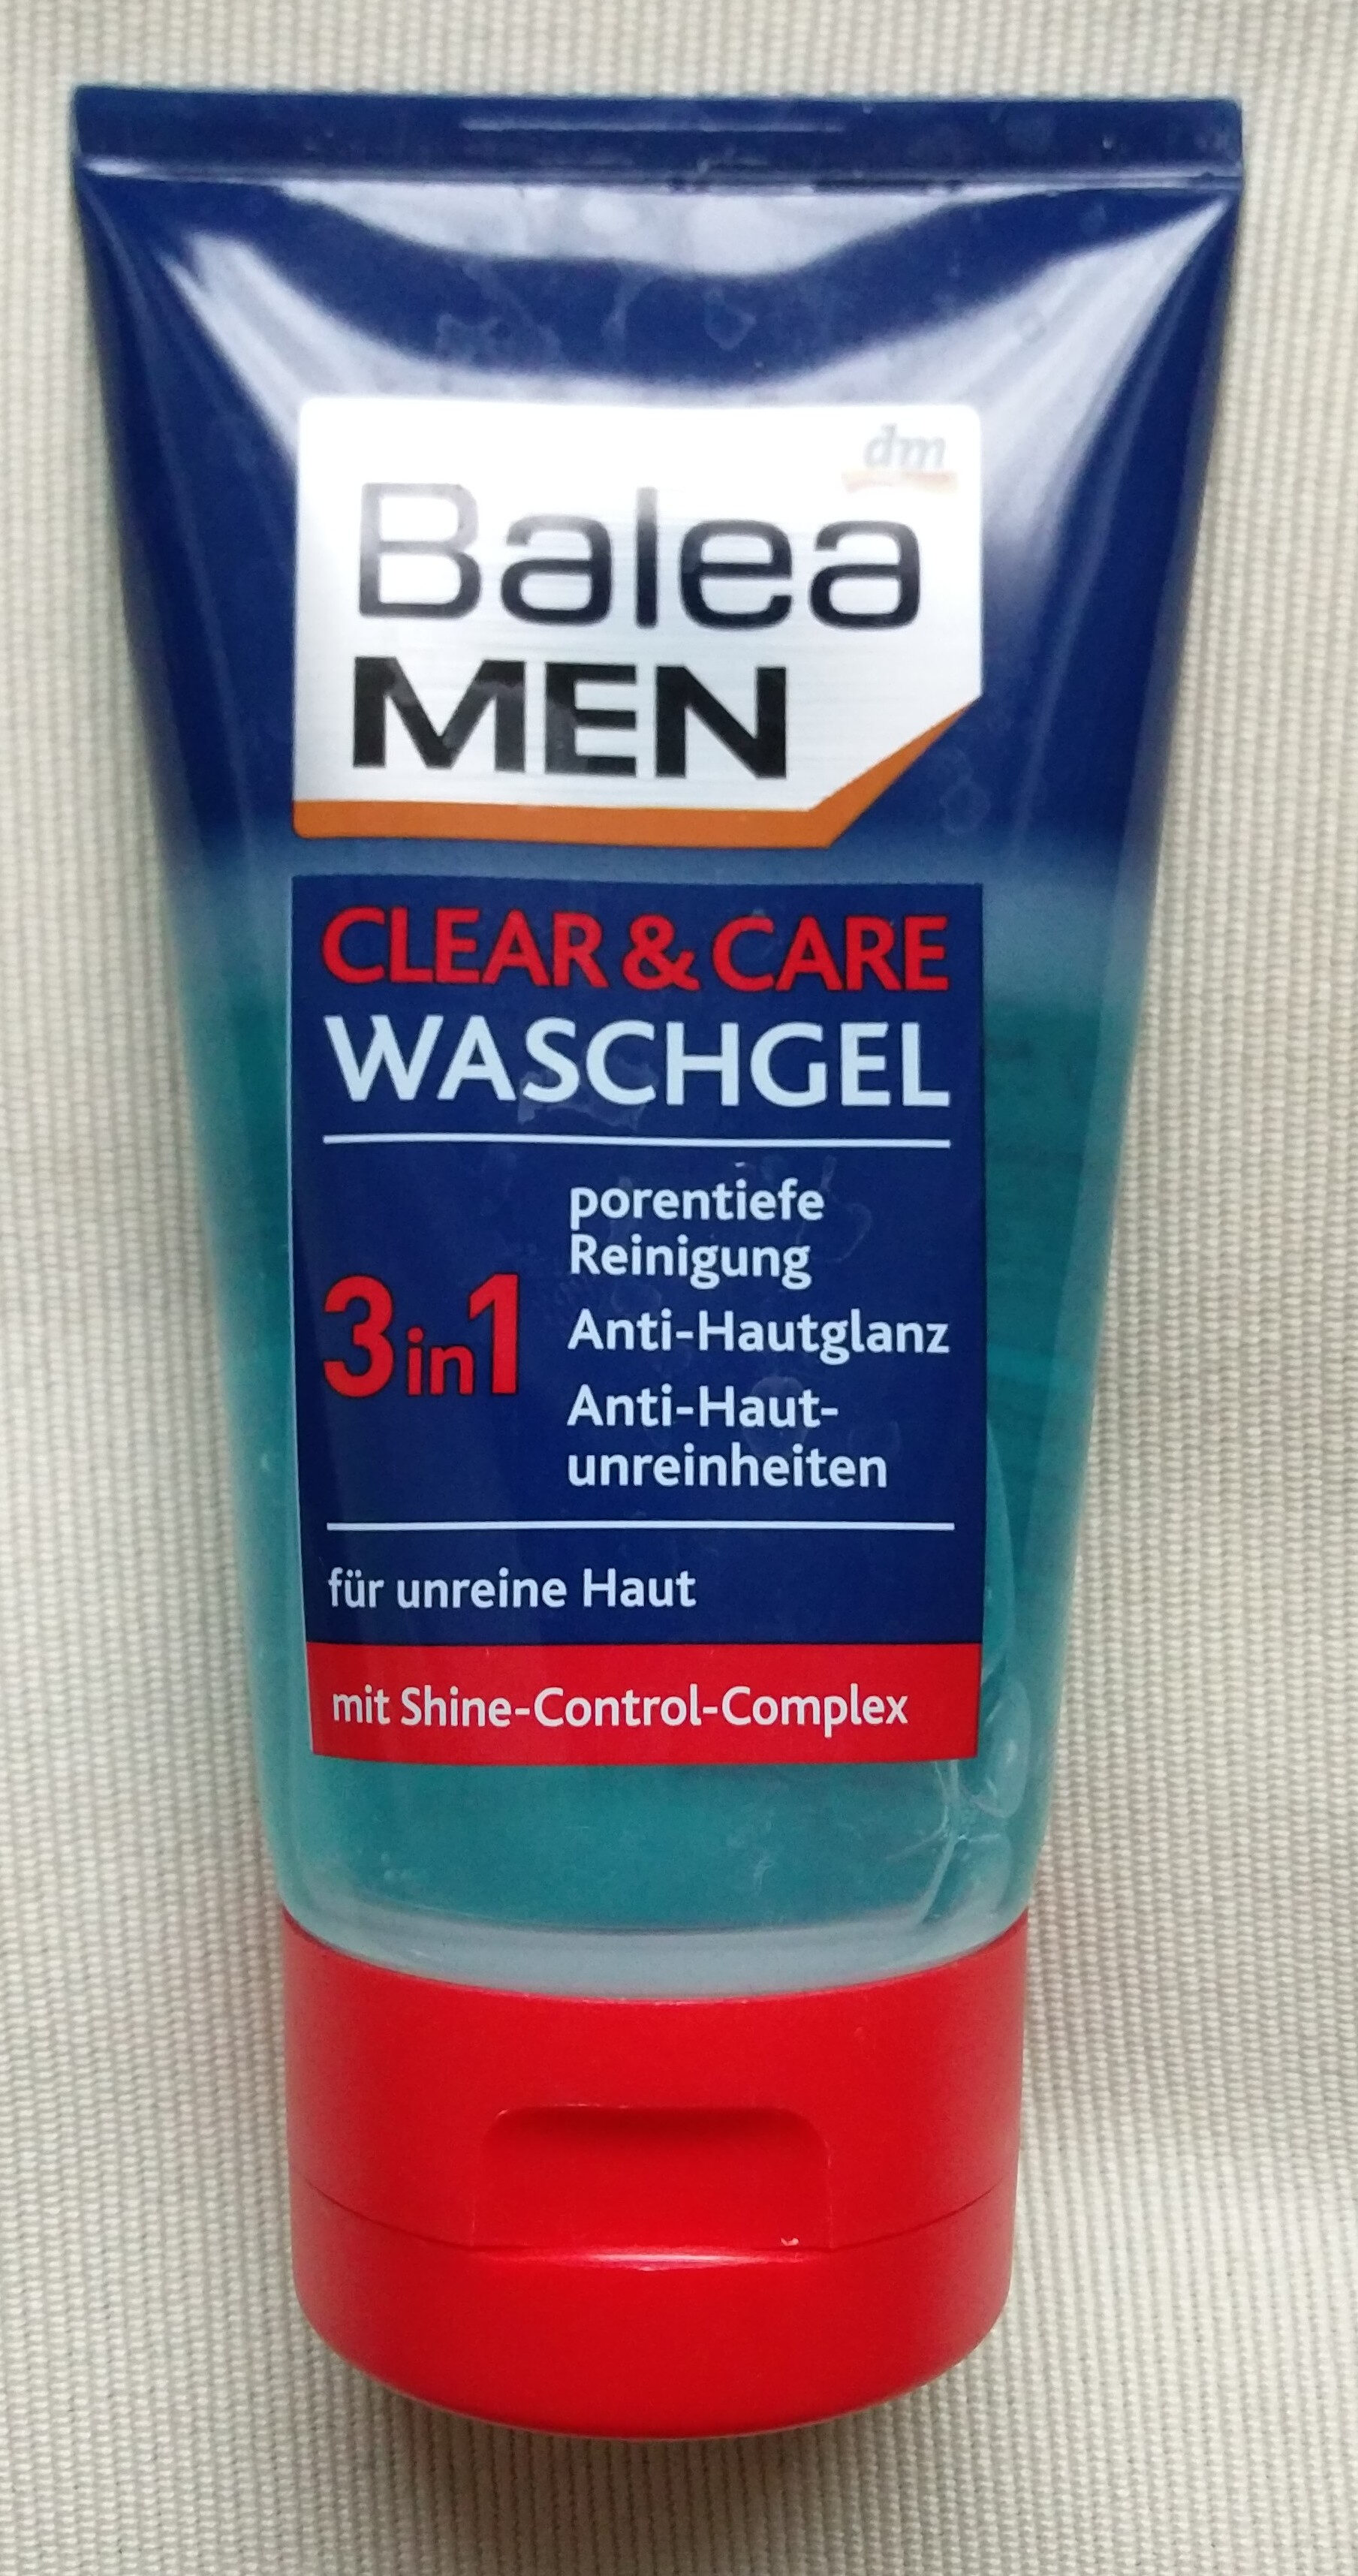 Clear & Care Waschgel (3 in 1, für unreine Haut) - Produit - de